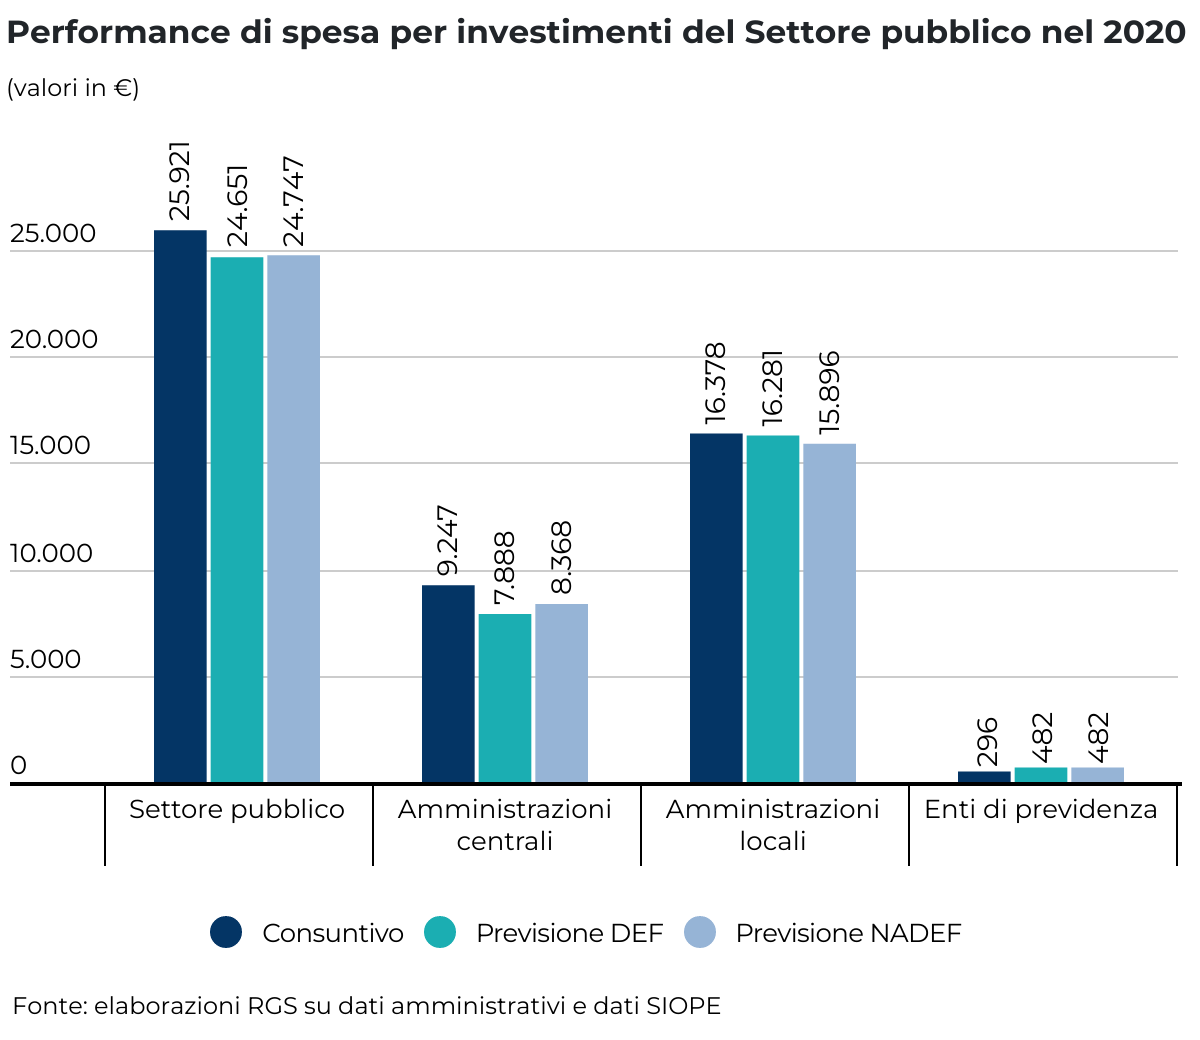 Il grafico a barre mostra la performance di spesa per investimenti del Settore Pubblico e dei sottosettori (Amministrazioni centrali, Amministrazioni locali ed Enti di previdenza) nell’anno 2020.  La fonte dei dati è: elaborazioni RGS su dati amministrativi e dati SIOPE. I valori sono espressi in milioni di euro. Per il Settore pubblico il consuntivo è stato pari a 25.921 milioni, la previsione DEF 24.651 milioni e la previsione NADEF 24.747 milioni. Per le Amministrazioni centrali il consuntivo è stato pari a 9.247 milioni, la previsione DEF 7.888 milioni e la previsione NADEF 8.368 milioni. Per le Amministrazioni locali il consuntivo è stato pari a 16.378 milioni, la previsione DEF 16.281 milioni e la previsione NADEF 15.896 milioni. Per gli enti di previdenza il consuntivo è stato pari a 296 milioni, la previsione DEF 482 milioni e la previsione NADEF 482 milioni.